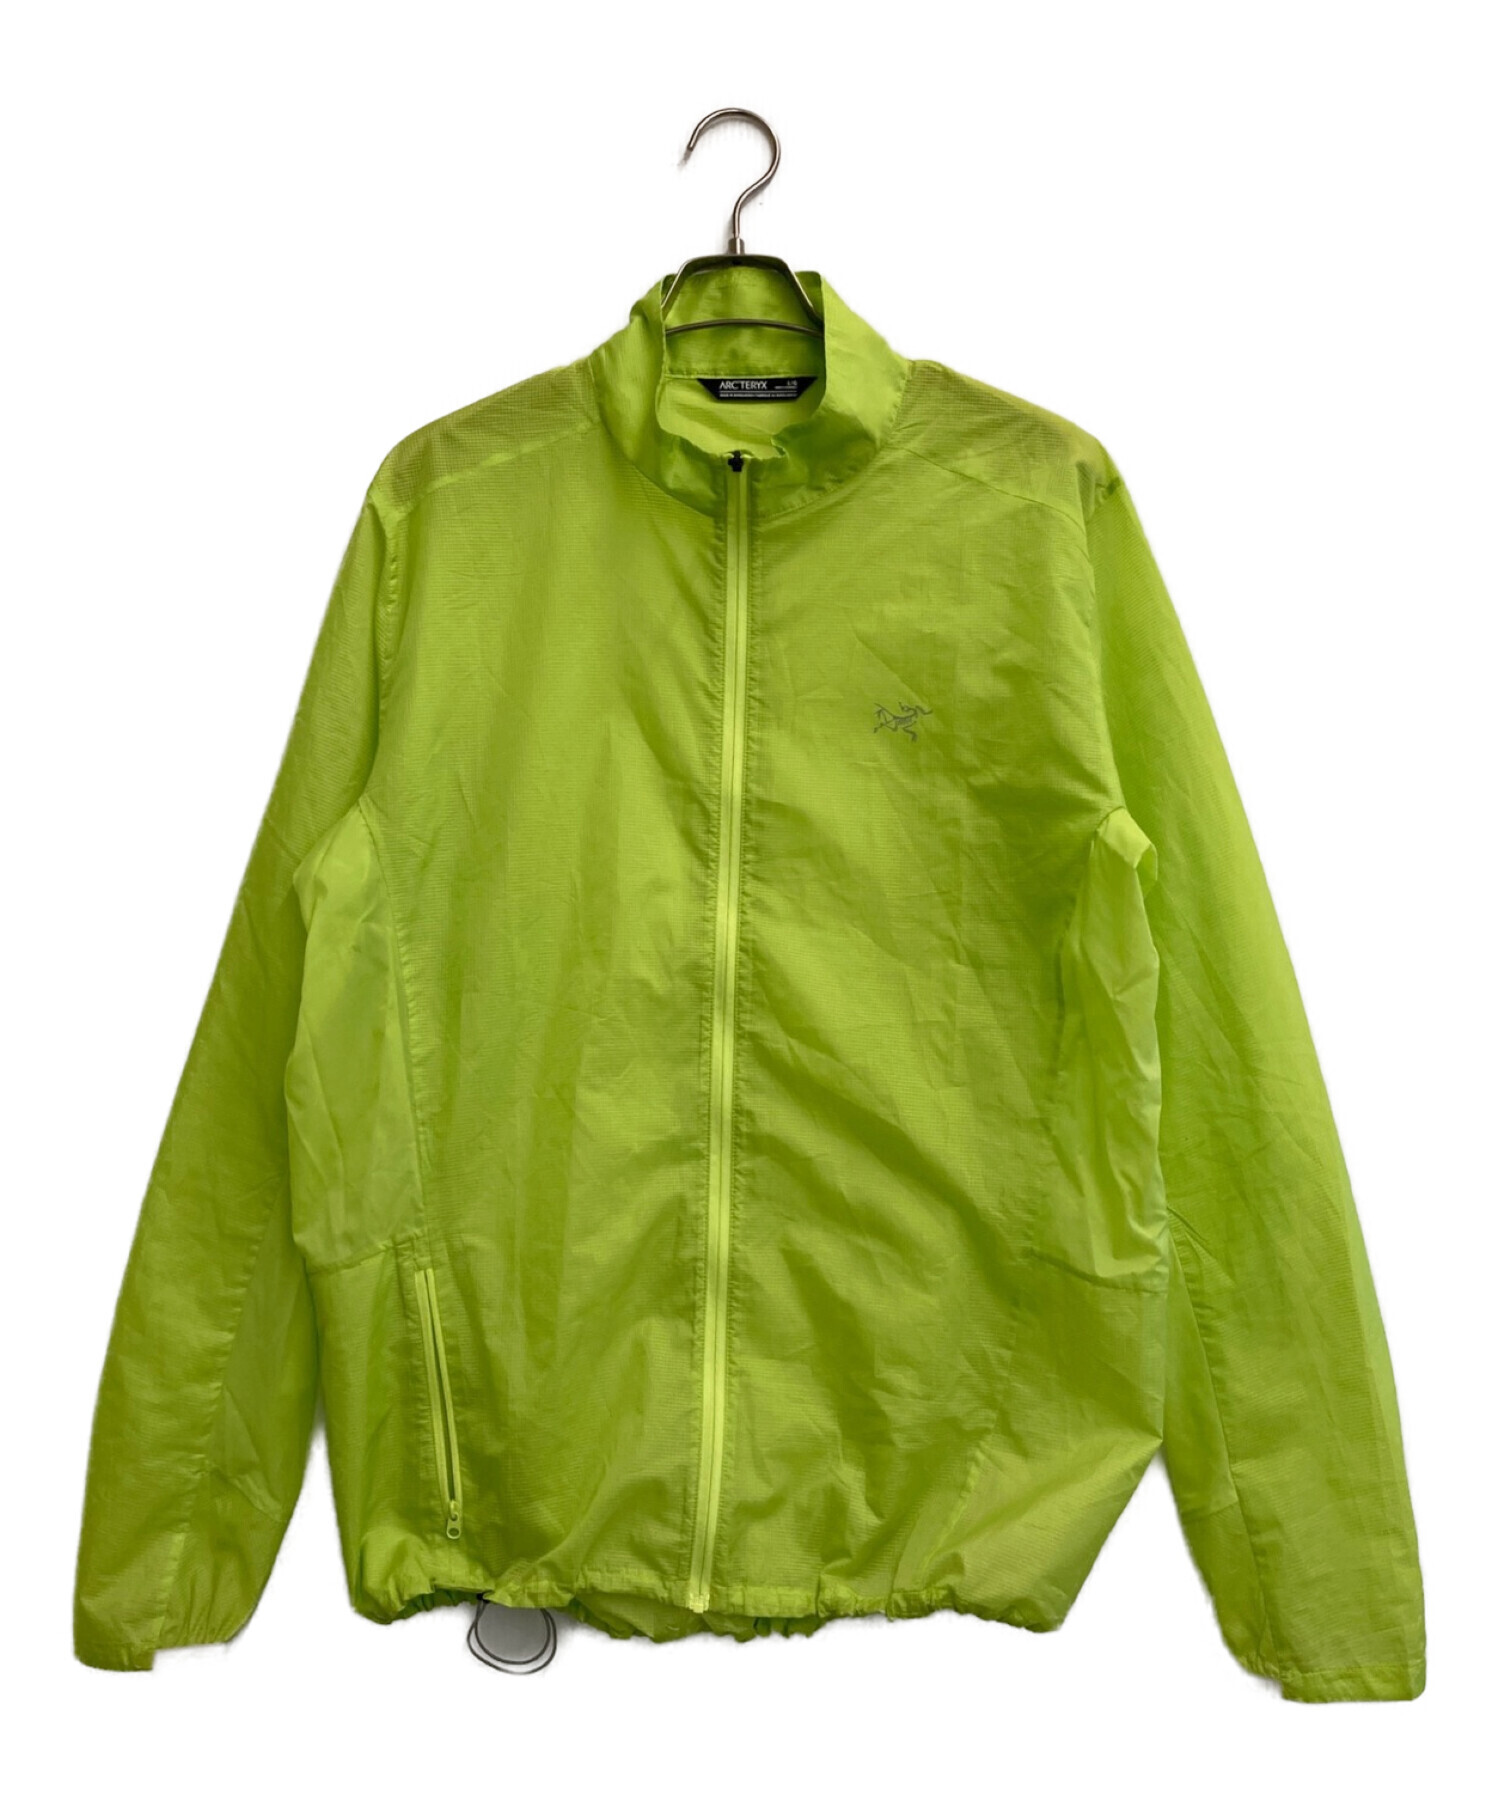 ARC'TERYX (アークテリクス) Norvan Windshell Jacket ライトグリーン サイズ:L